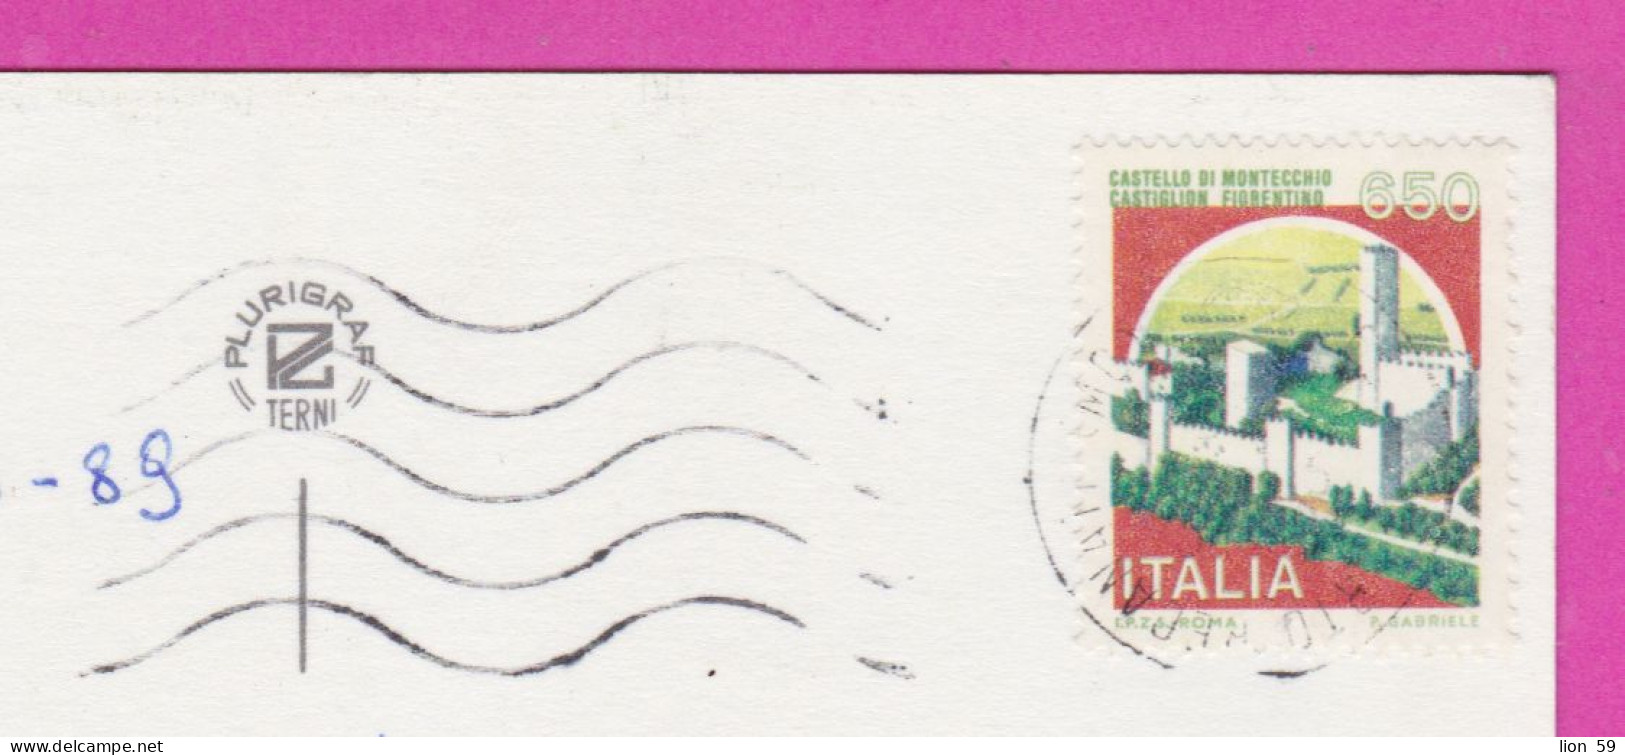 293891 / Italy - Rivera Del CONERO PC 1989 Porto Recanati USED 650 L Castello Di Montecchio, Castiglion Fiorentino - 1981-90: Marcofilia